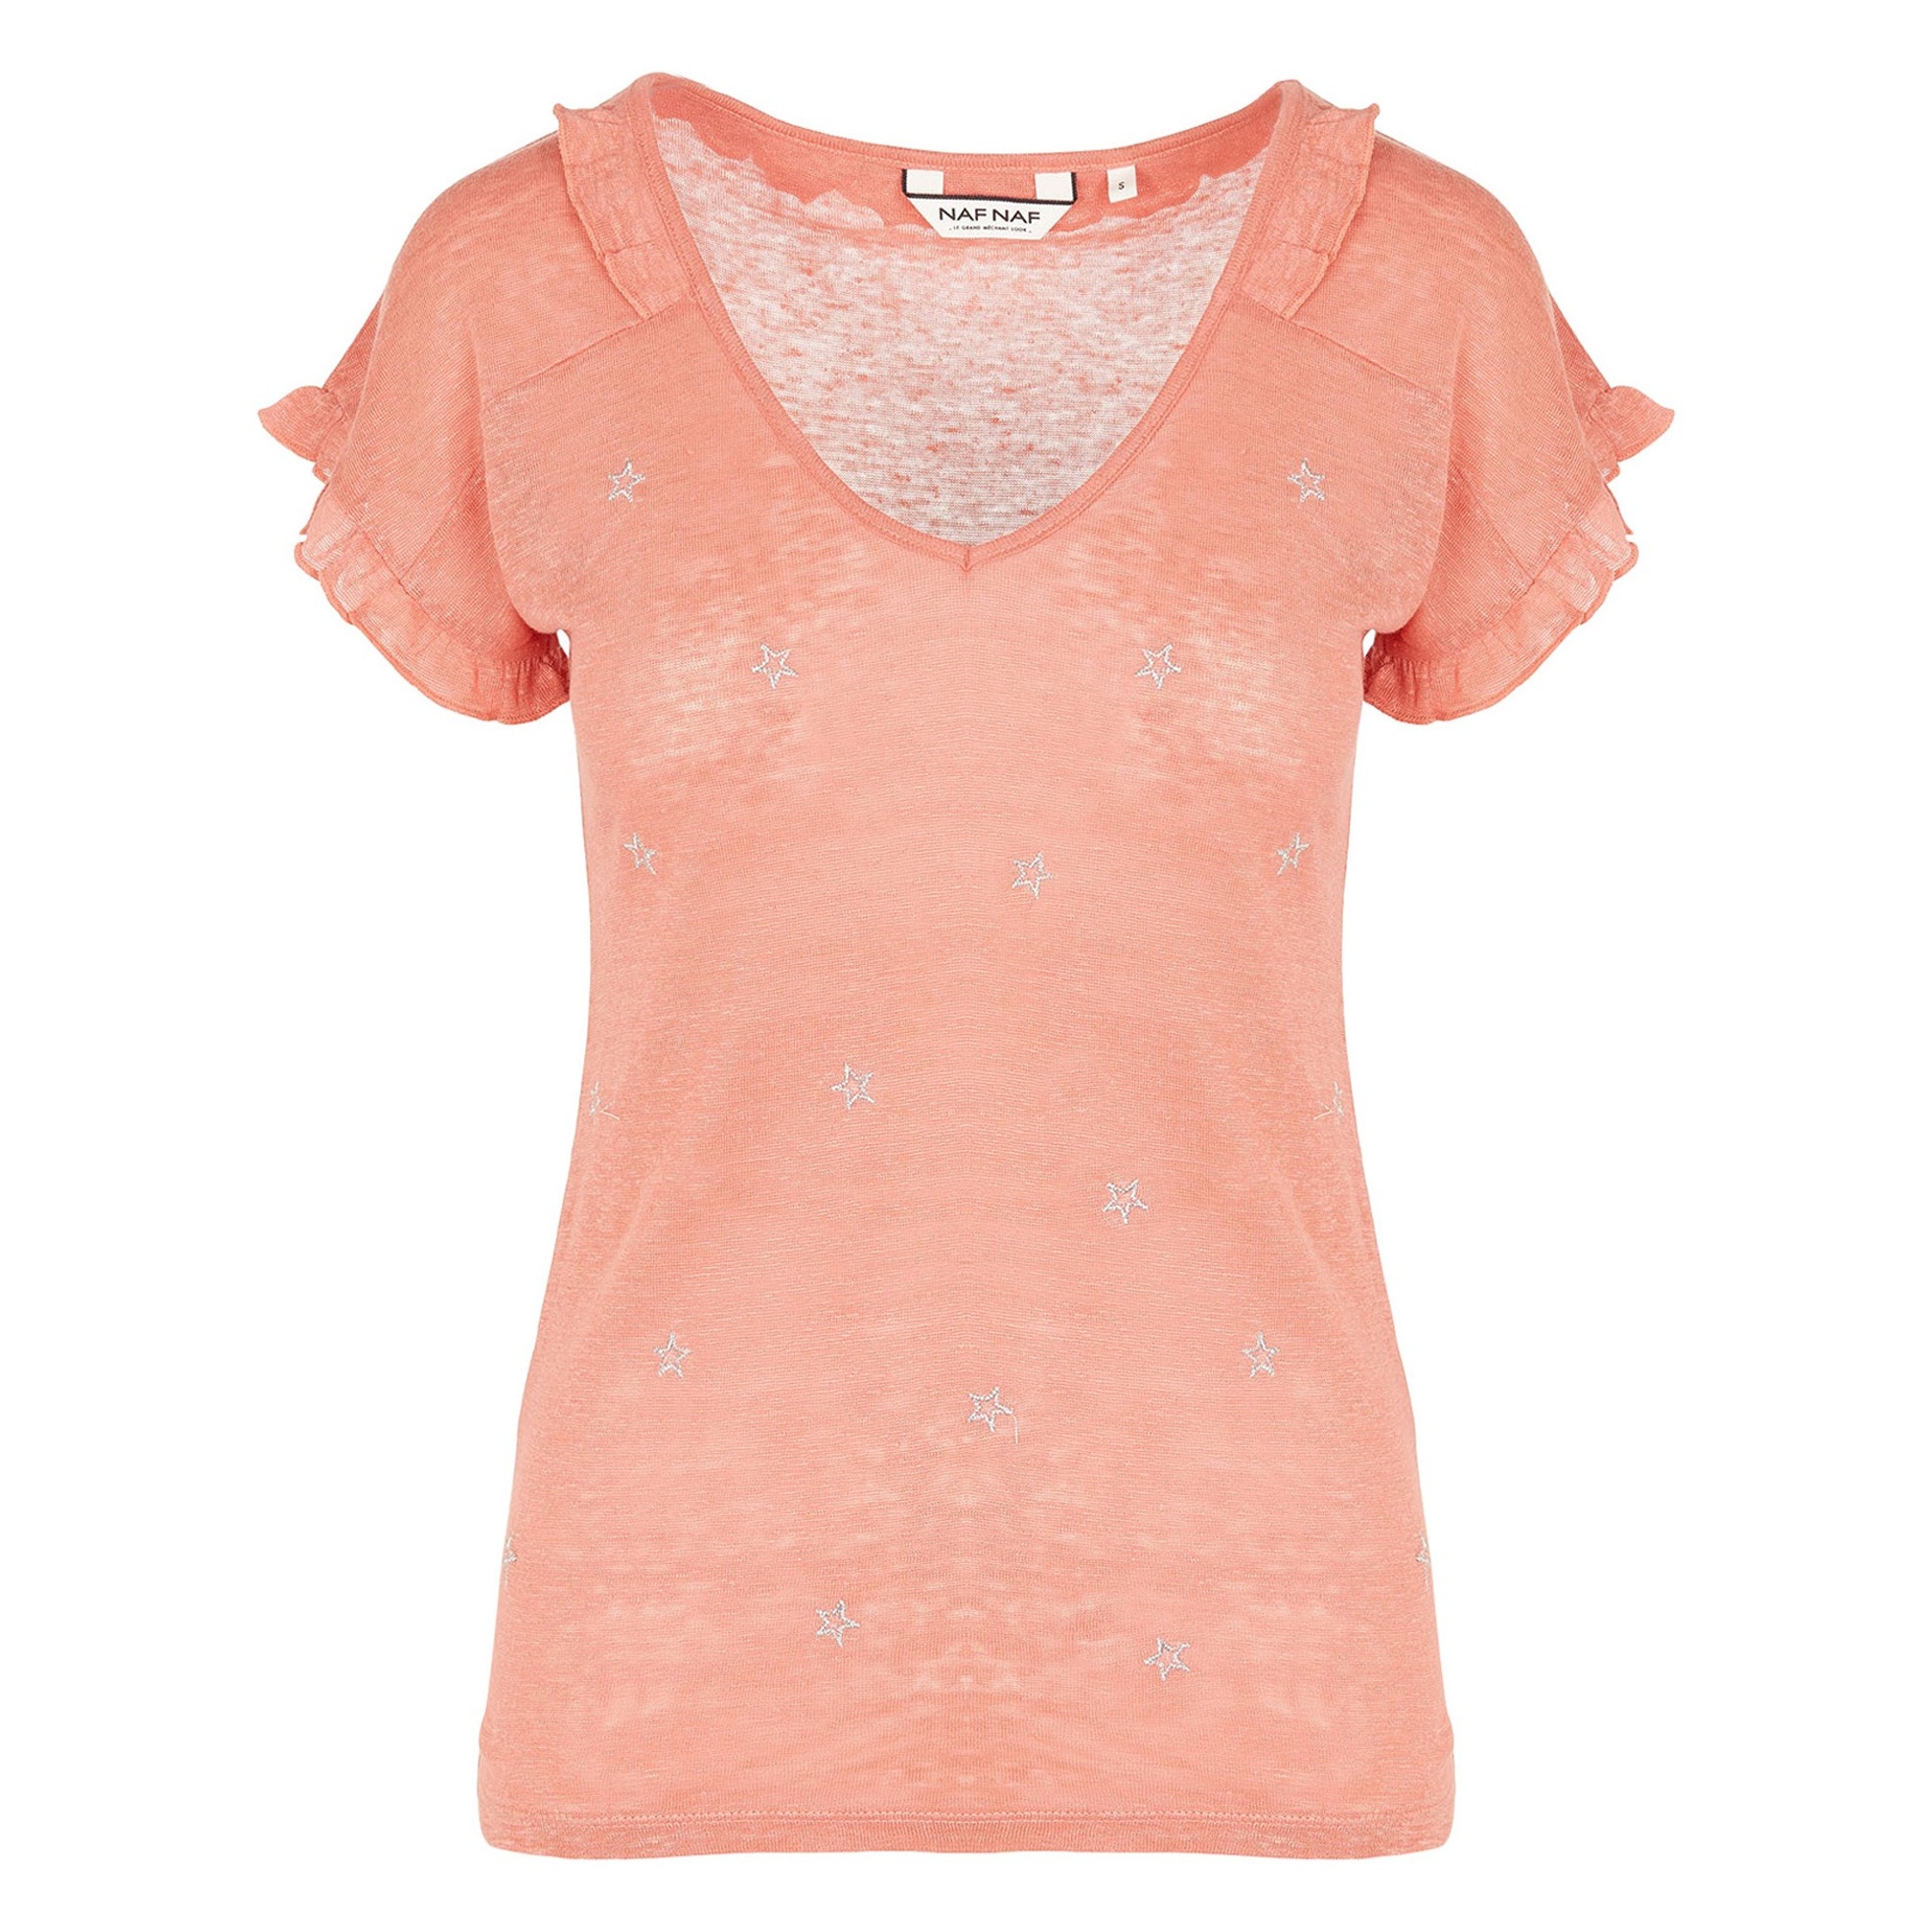 تی شرت یقه هفت زنانه - نف نف - نارنجي - 1